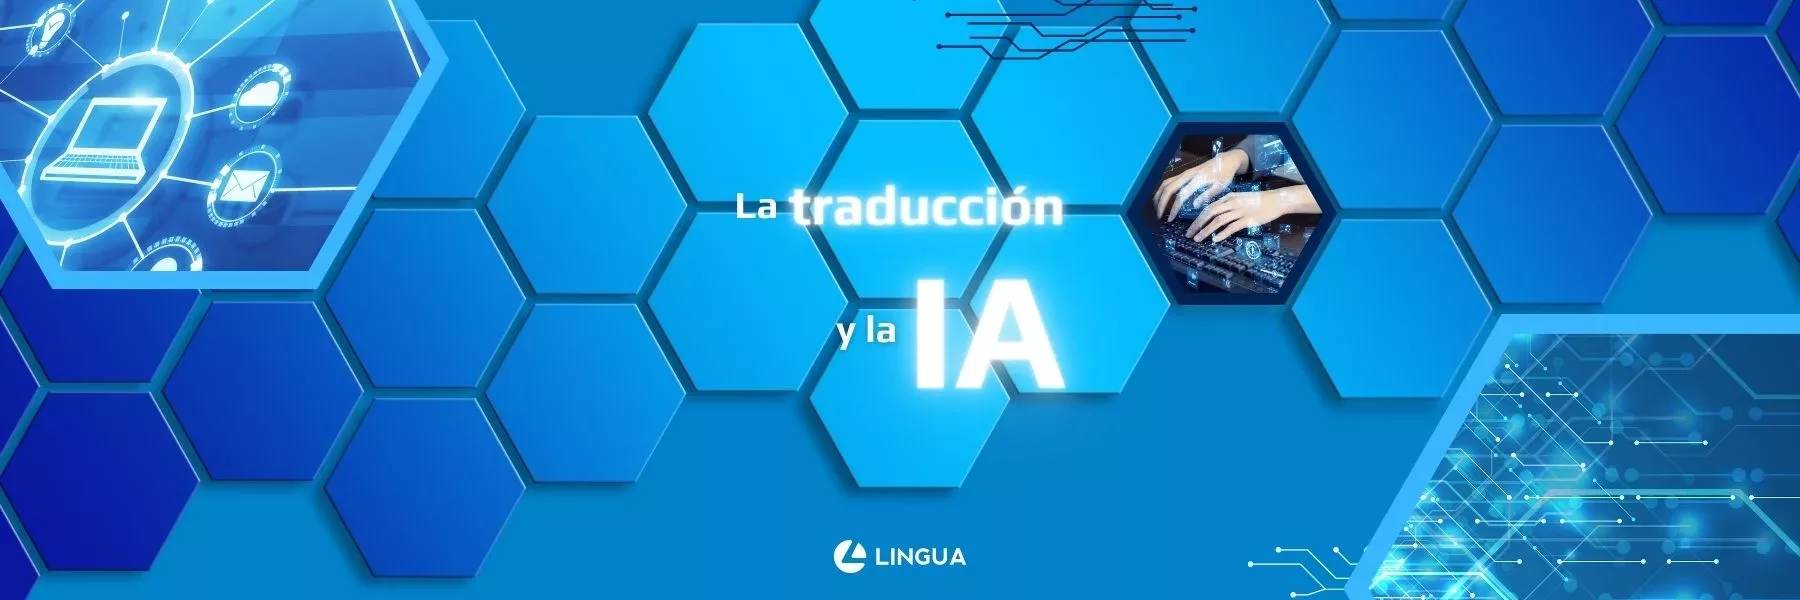 Imagen destacada del blog con fondo azul de hexágonos y motivos tecnológicos. Texto: “La traducción y la IA”. Logo de Lingua Int centrado abajo en blanco.